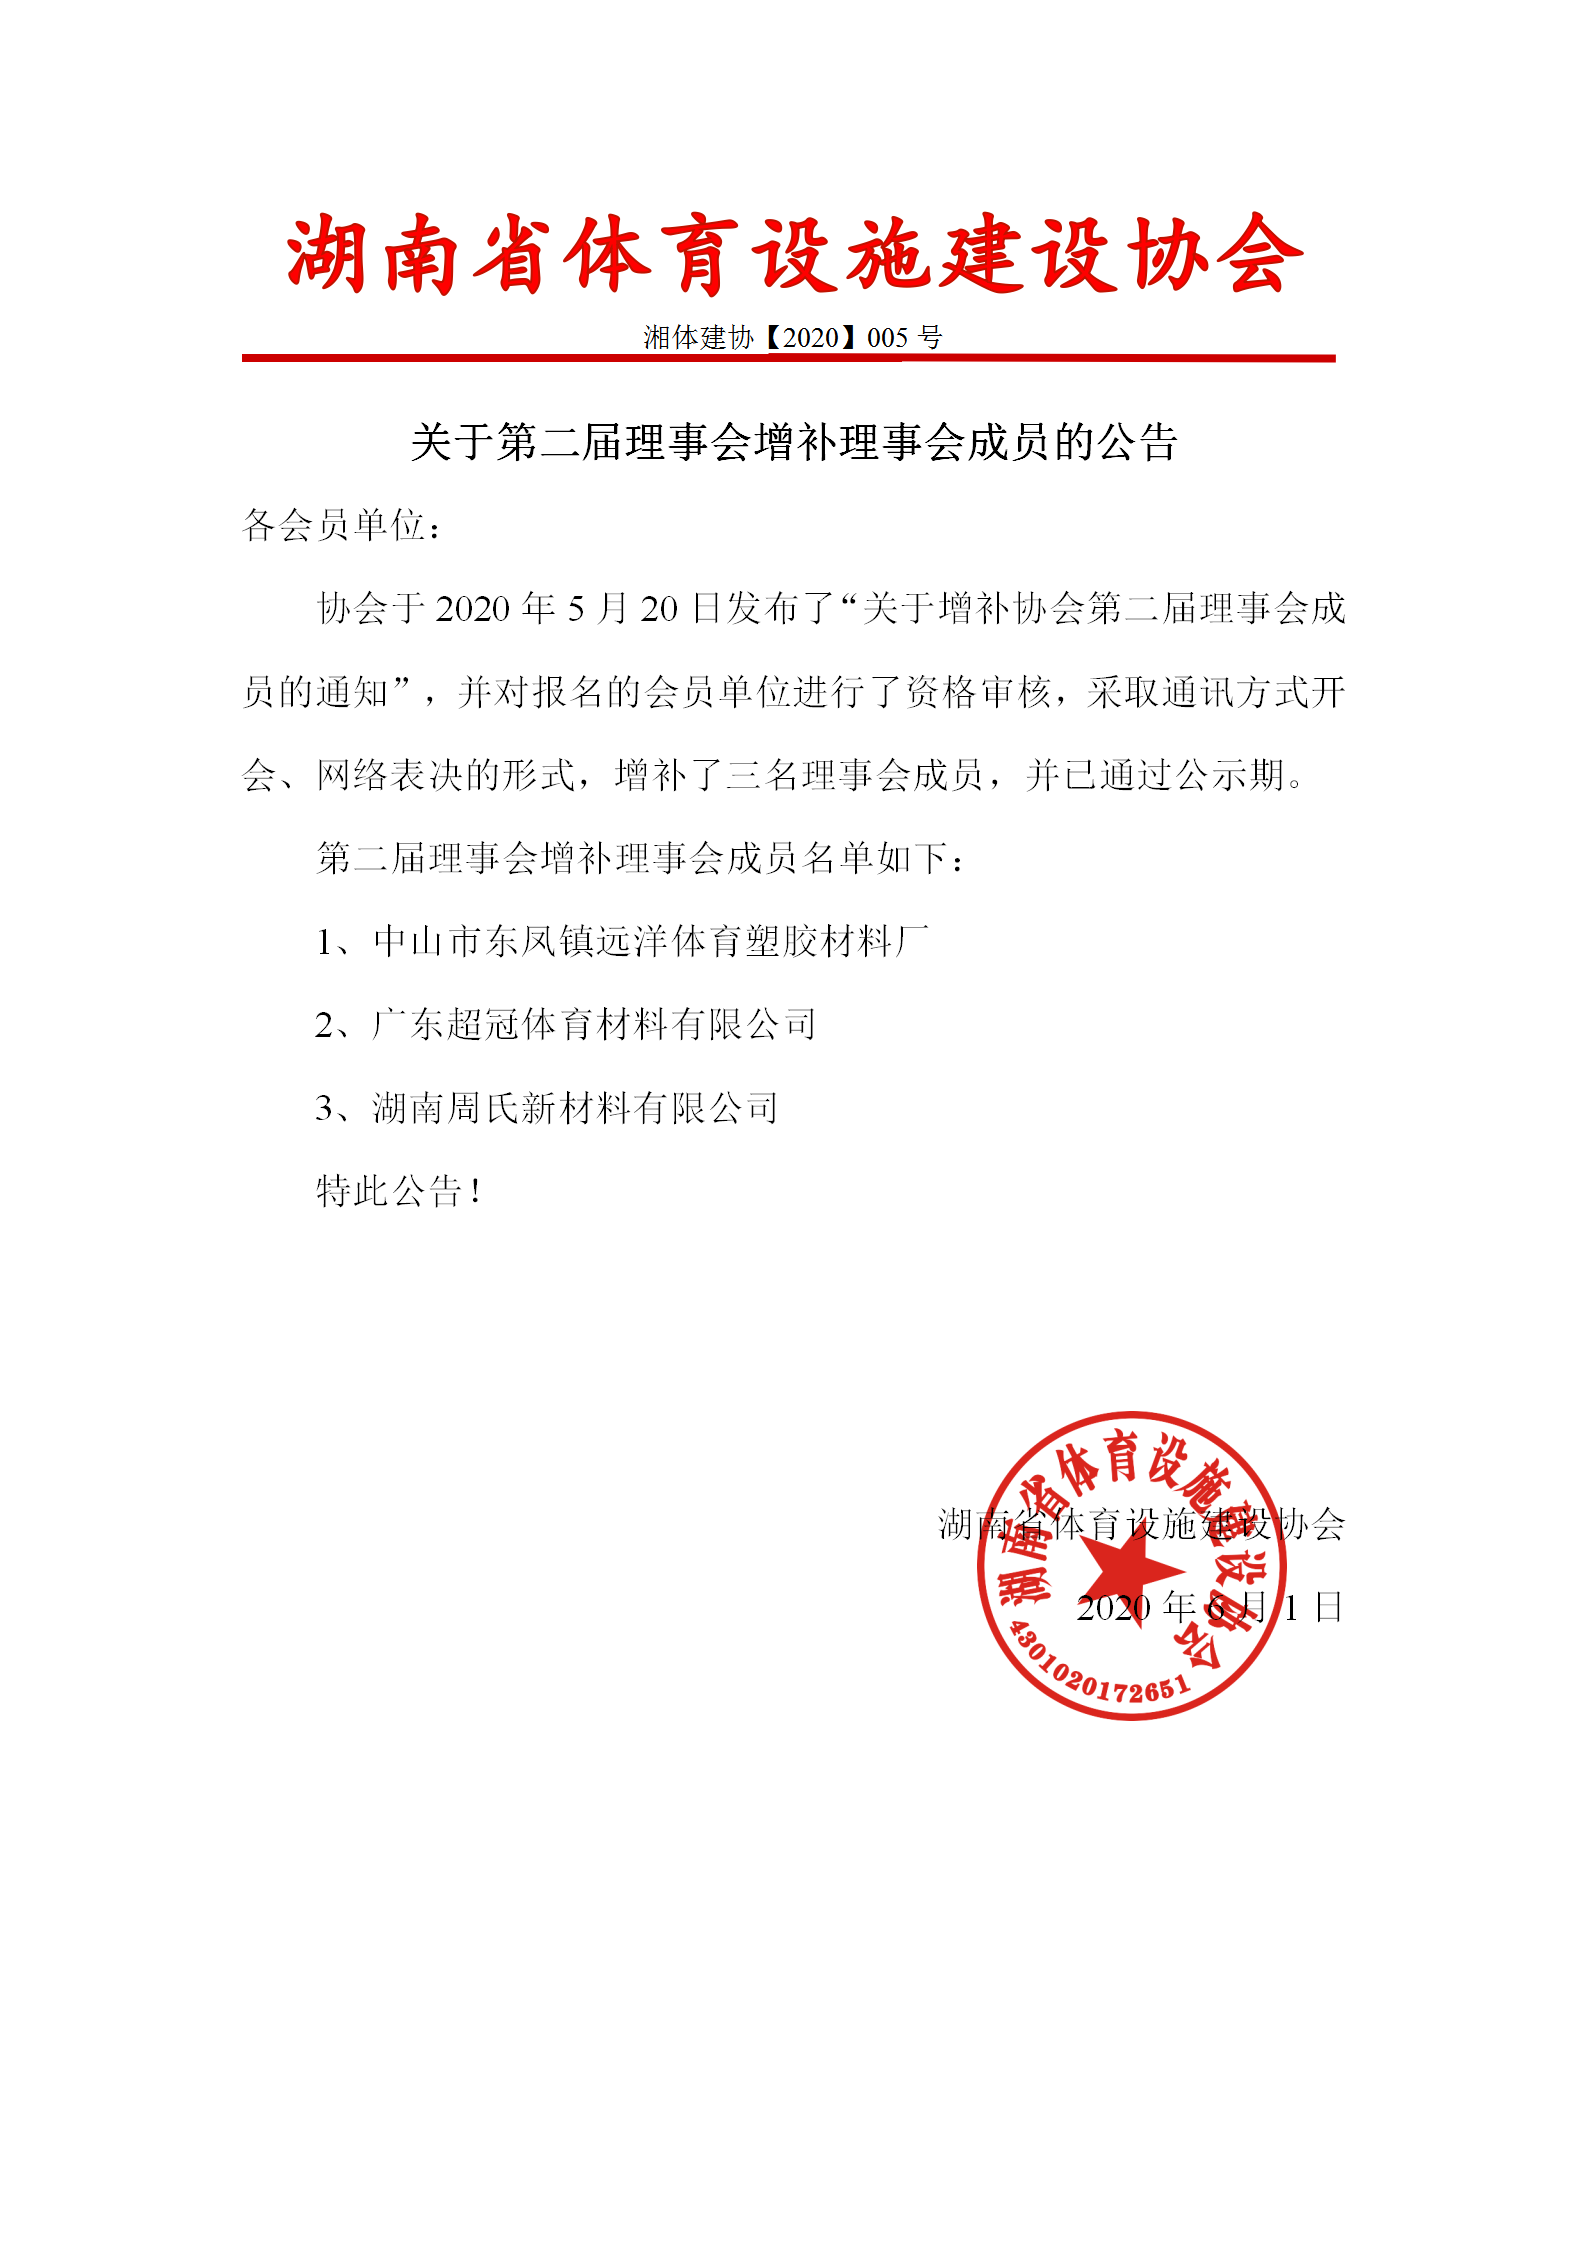 湖南省体育设施建设协会关于第二届理事会增补理事会成员的公告